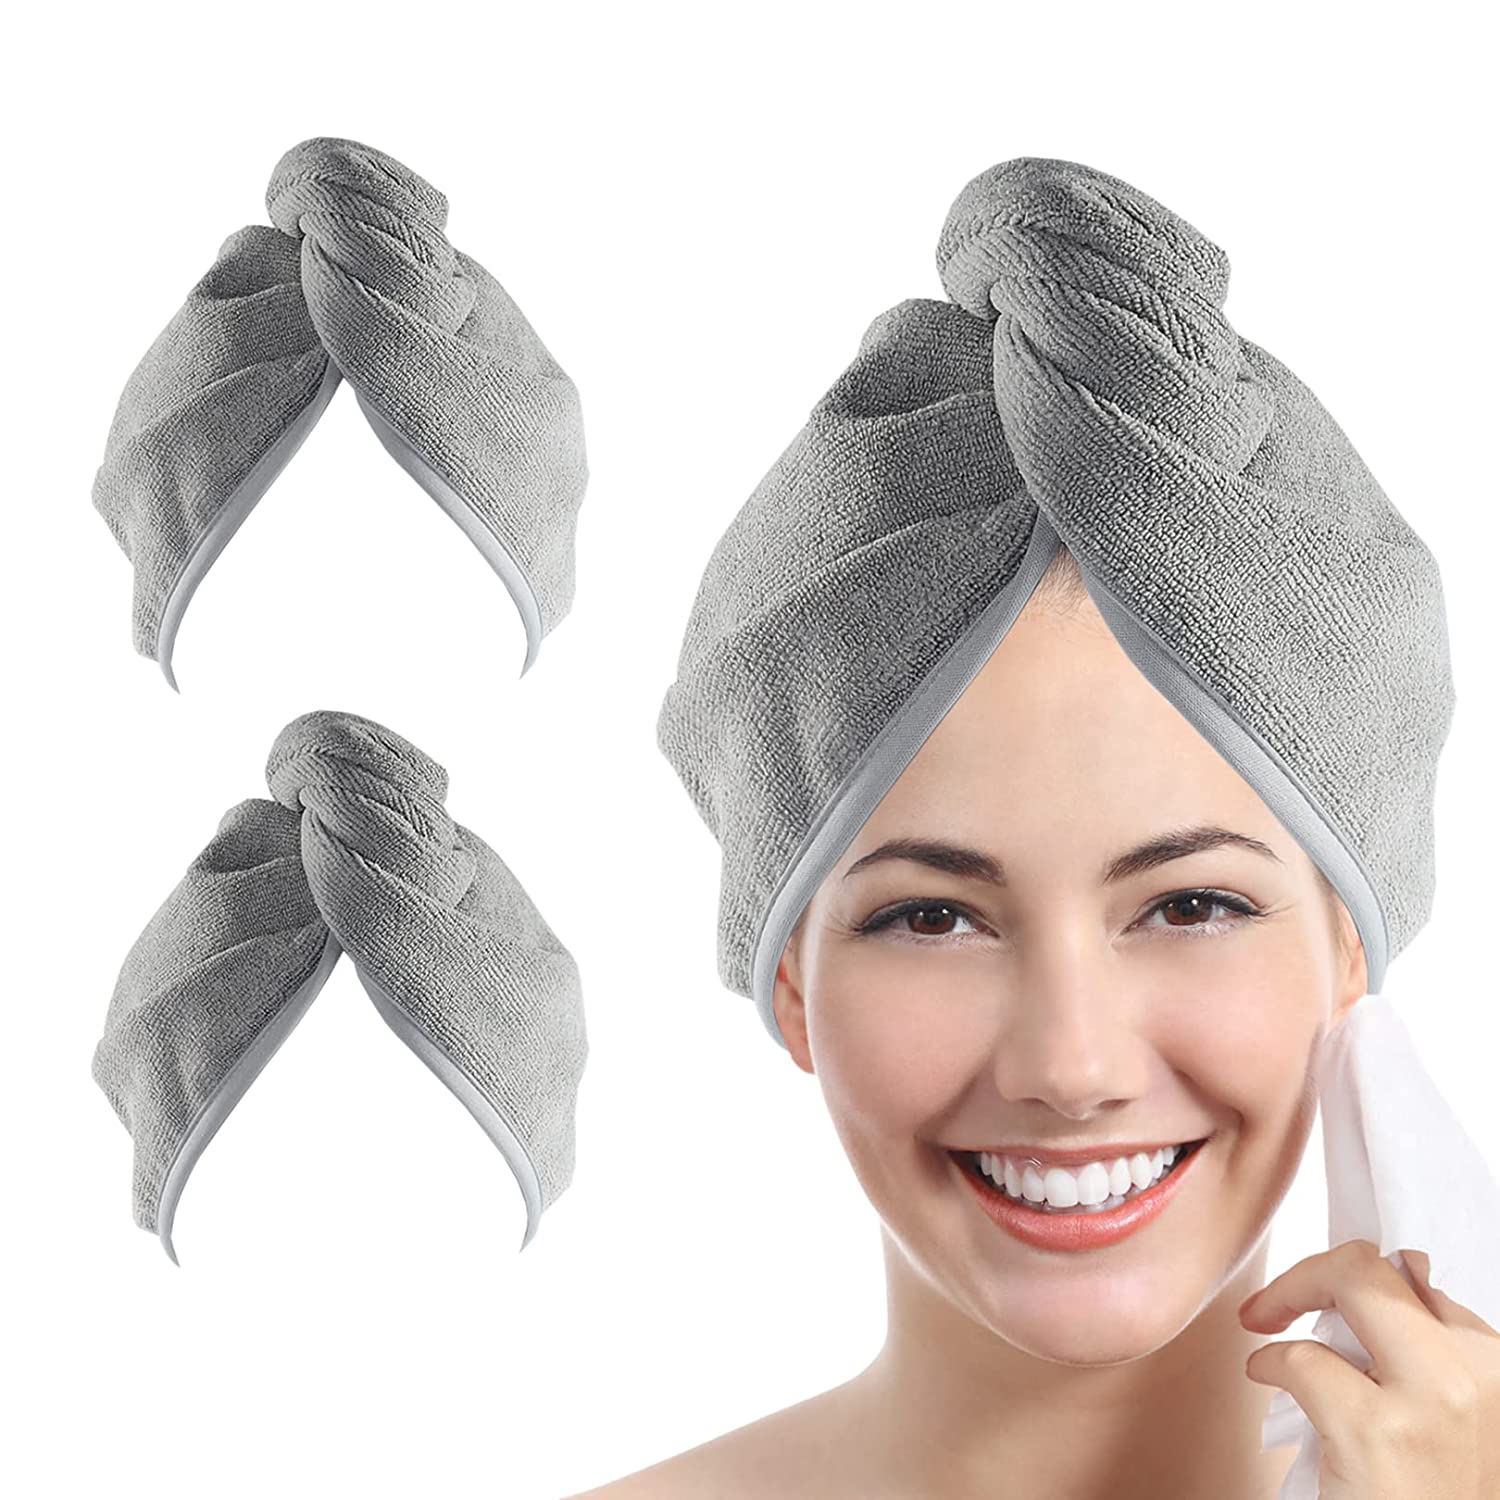 YoulerTex Microfiber Hair Towel